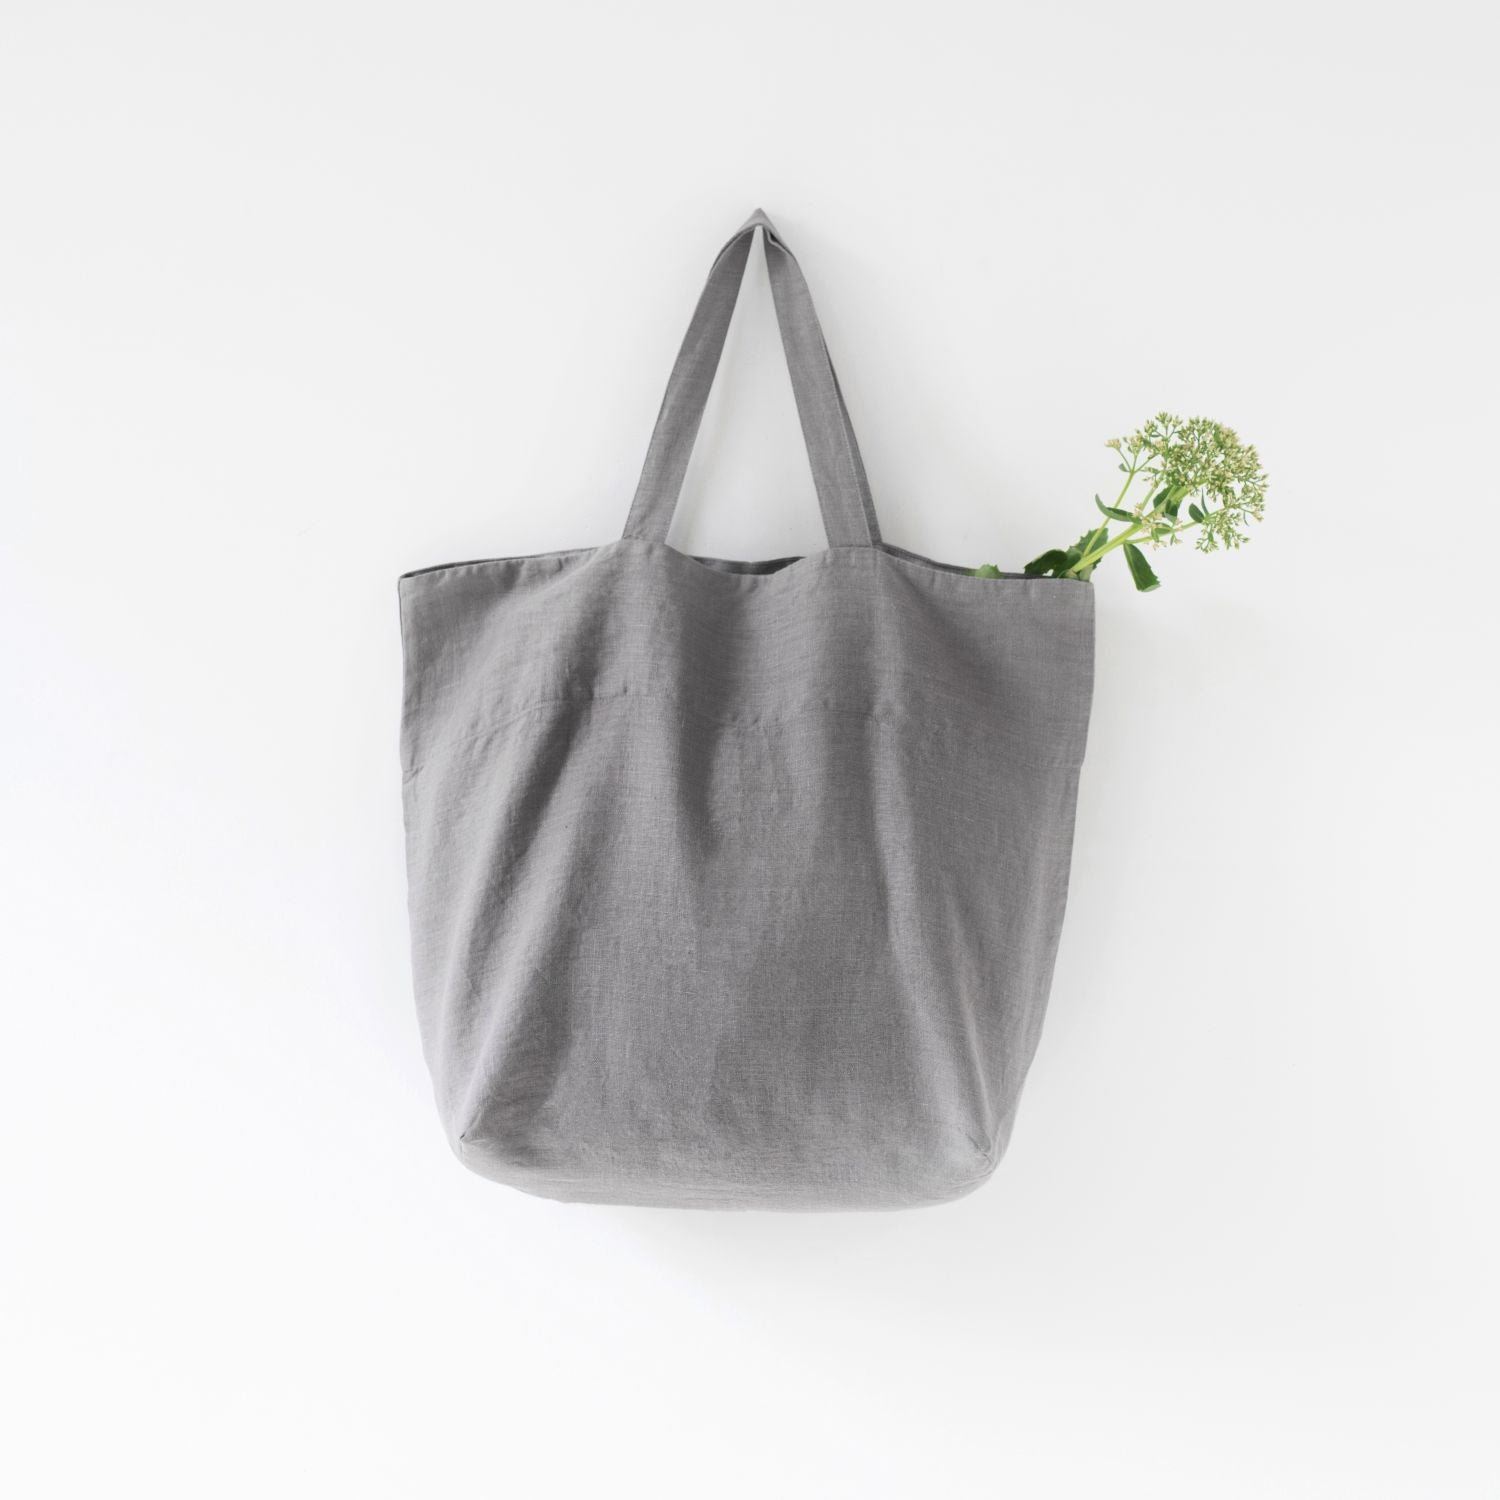 Medelstor tygväska i ljusgrå linne som hänger på en krok. Väskan har formen av en rektangel med medellånga handtag. Från väskan sticker en grön kvist upp.